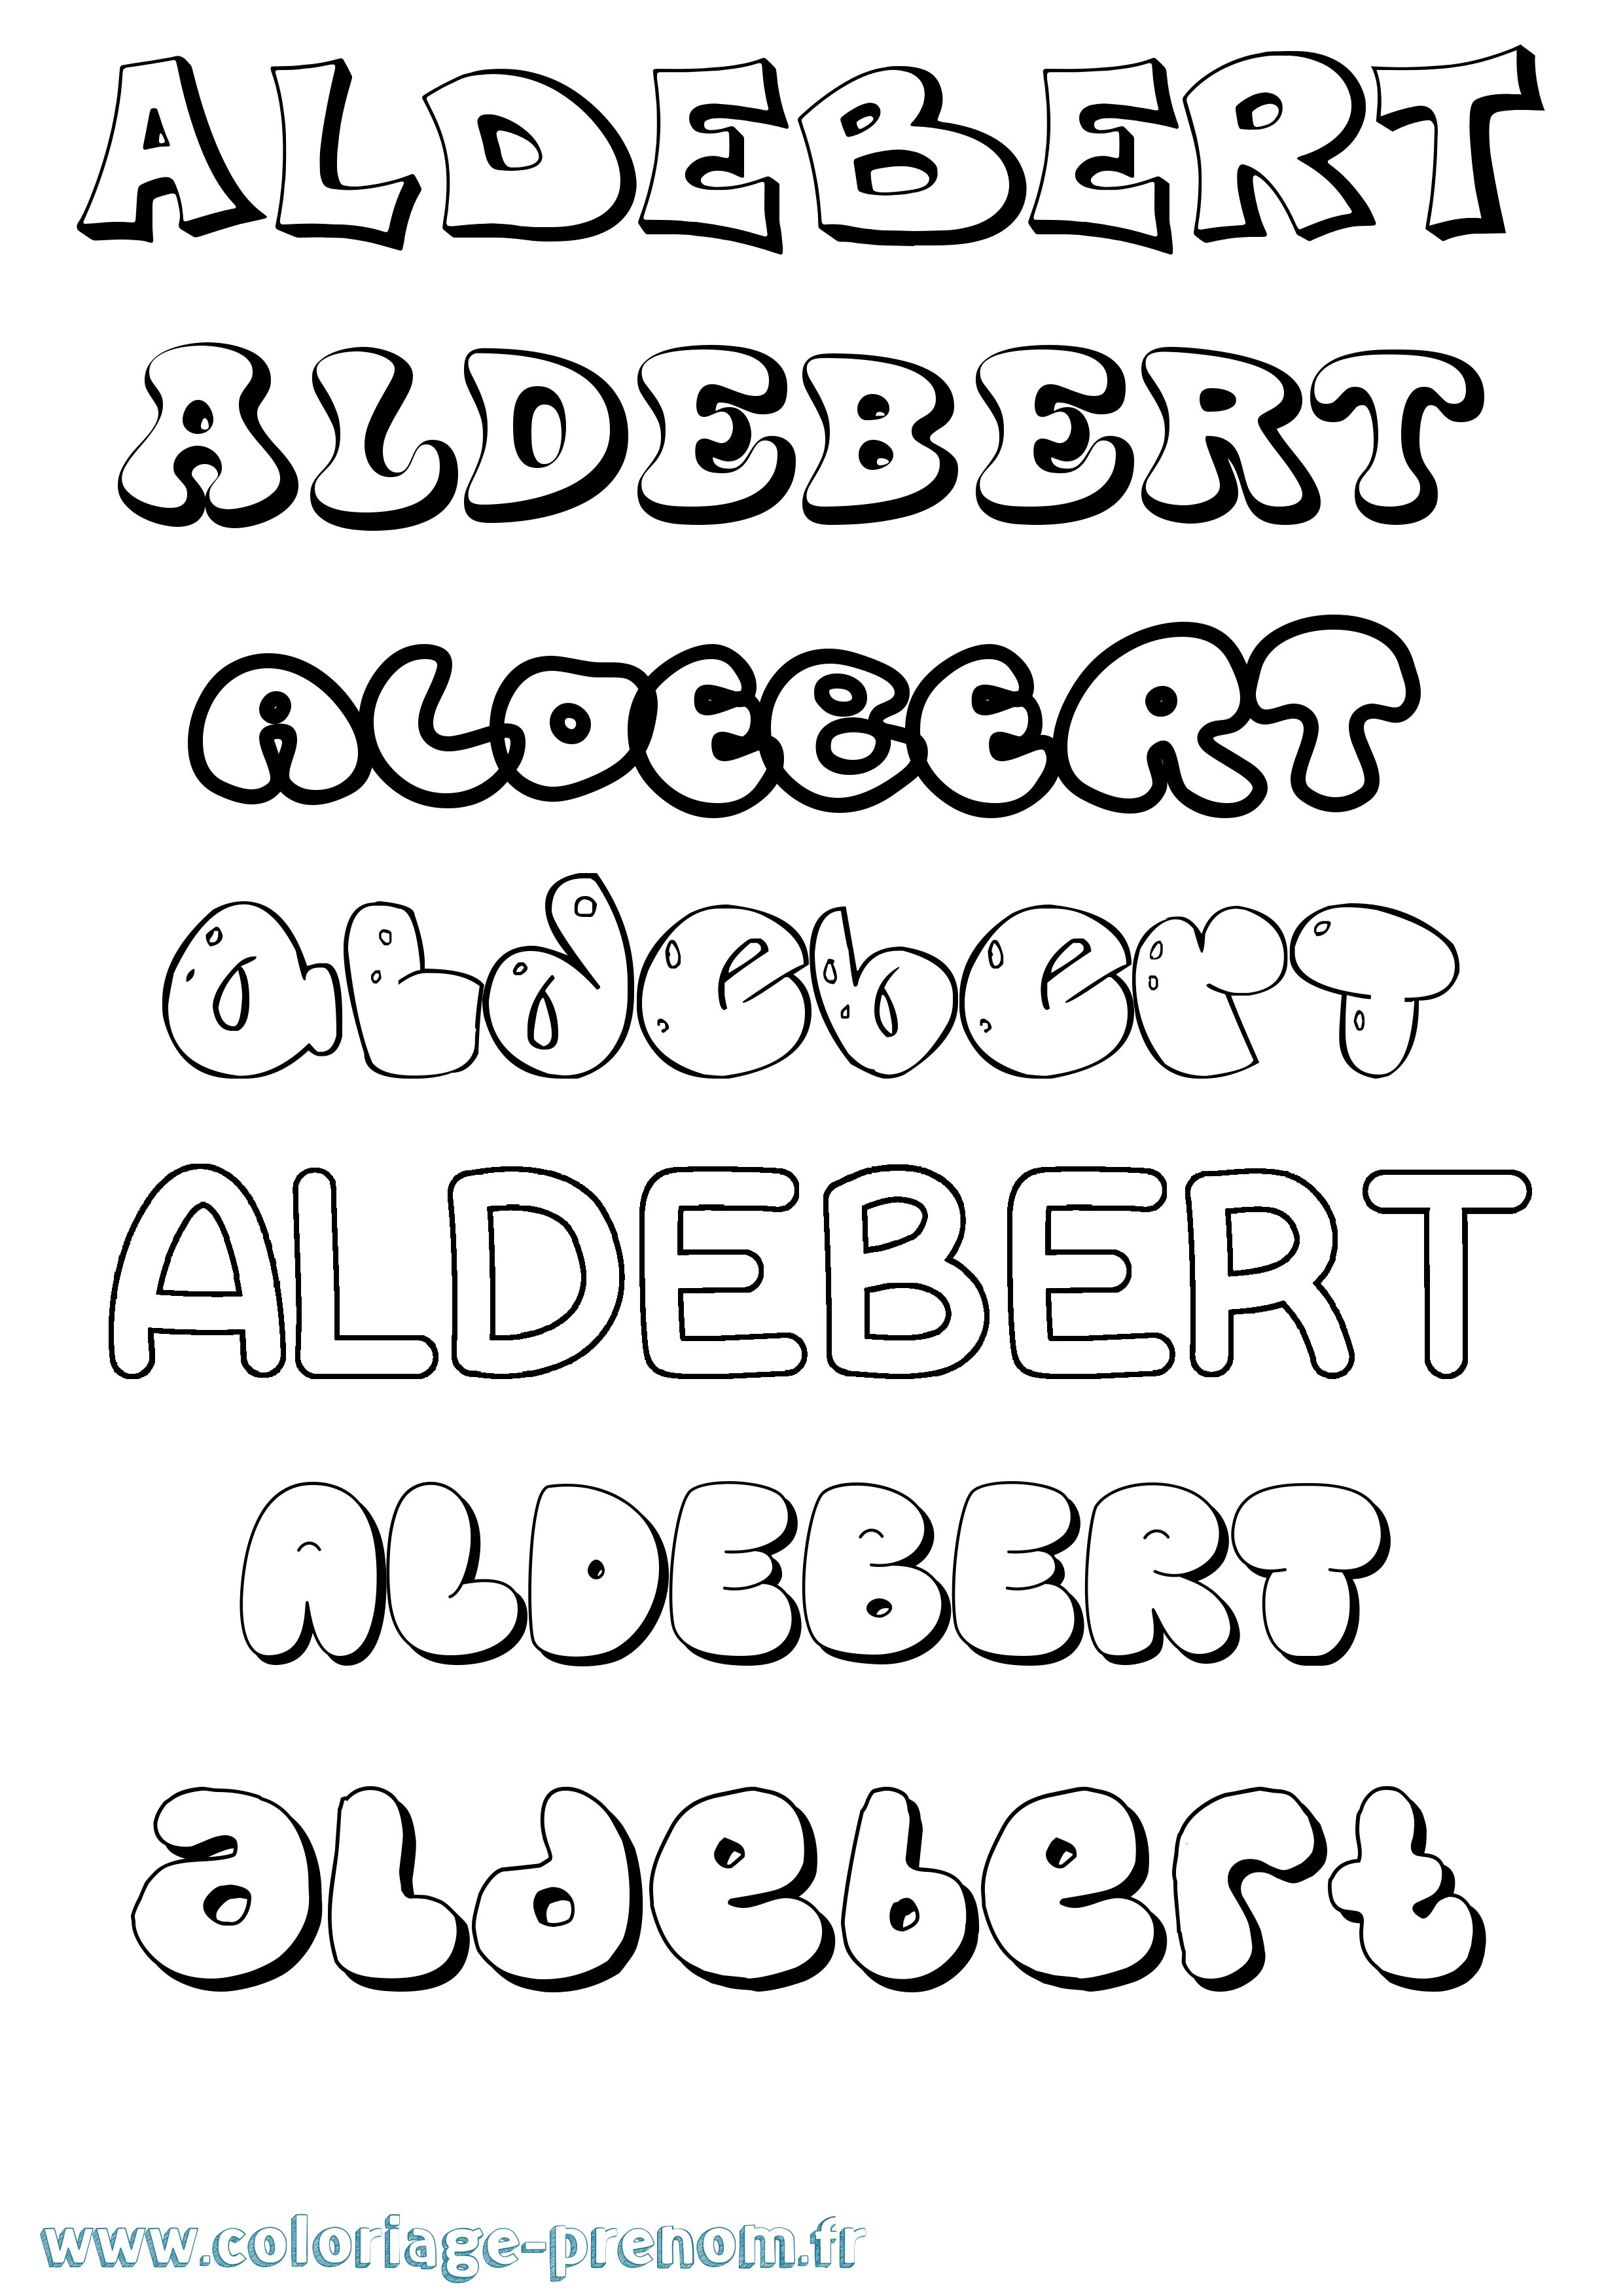 Coloriage prénom Aldebert Bubble